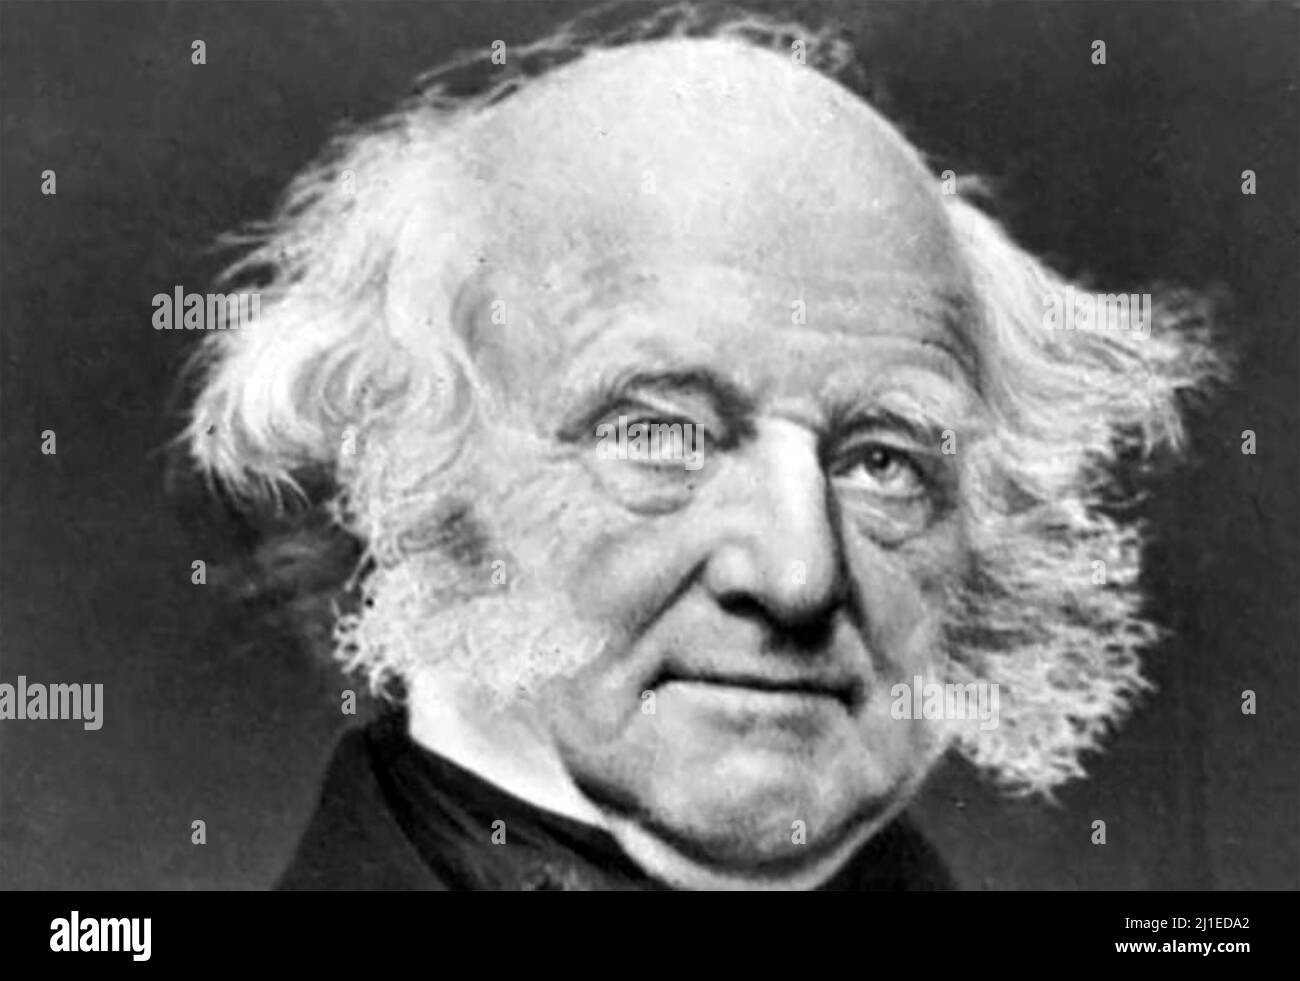 MARTIN van BUREN (1782-1862) amerikanischer Rechtsanwalt und Präsident der Vereinigten Staaten von Amerika 8., Foto von Mathew Brady um 1856/ Stockfoto